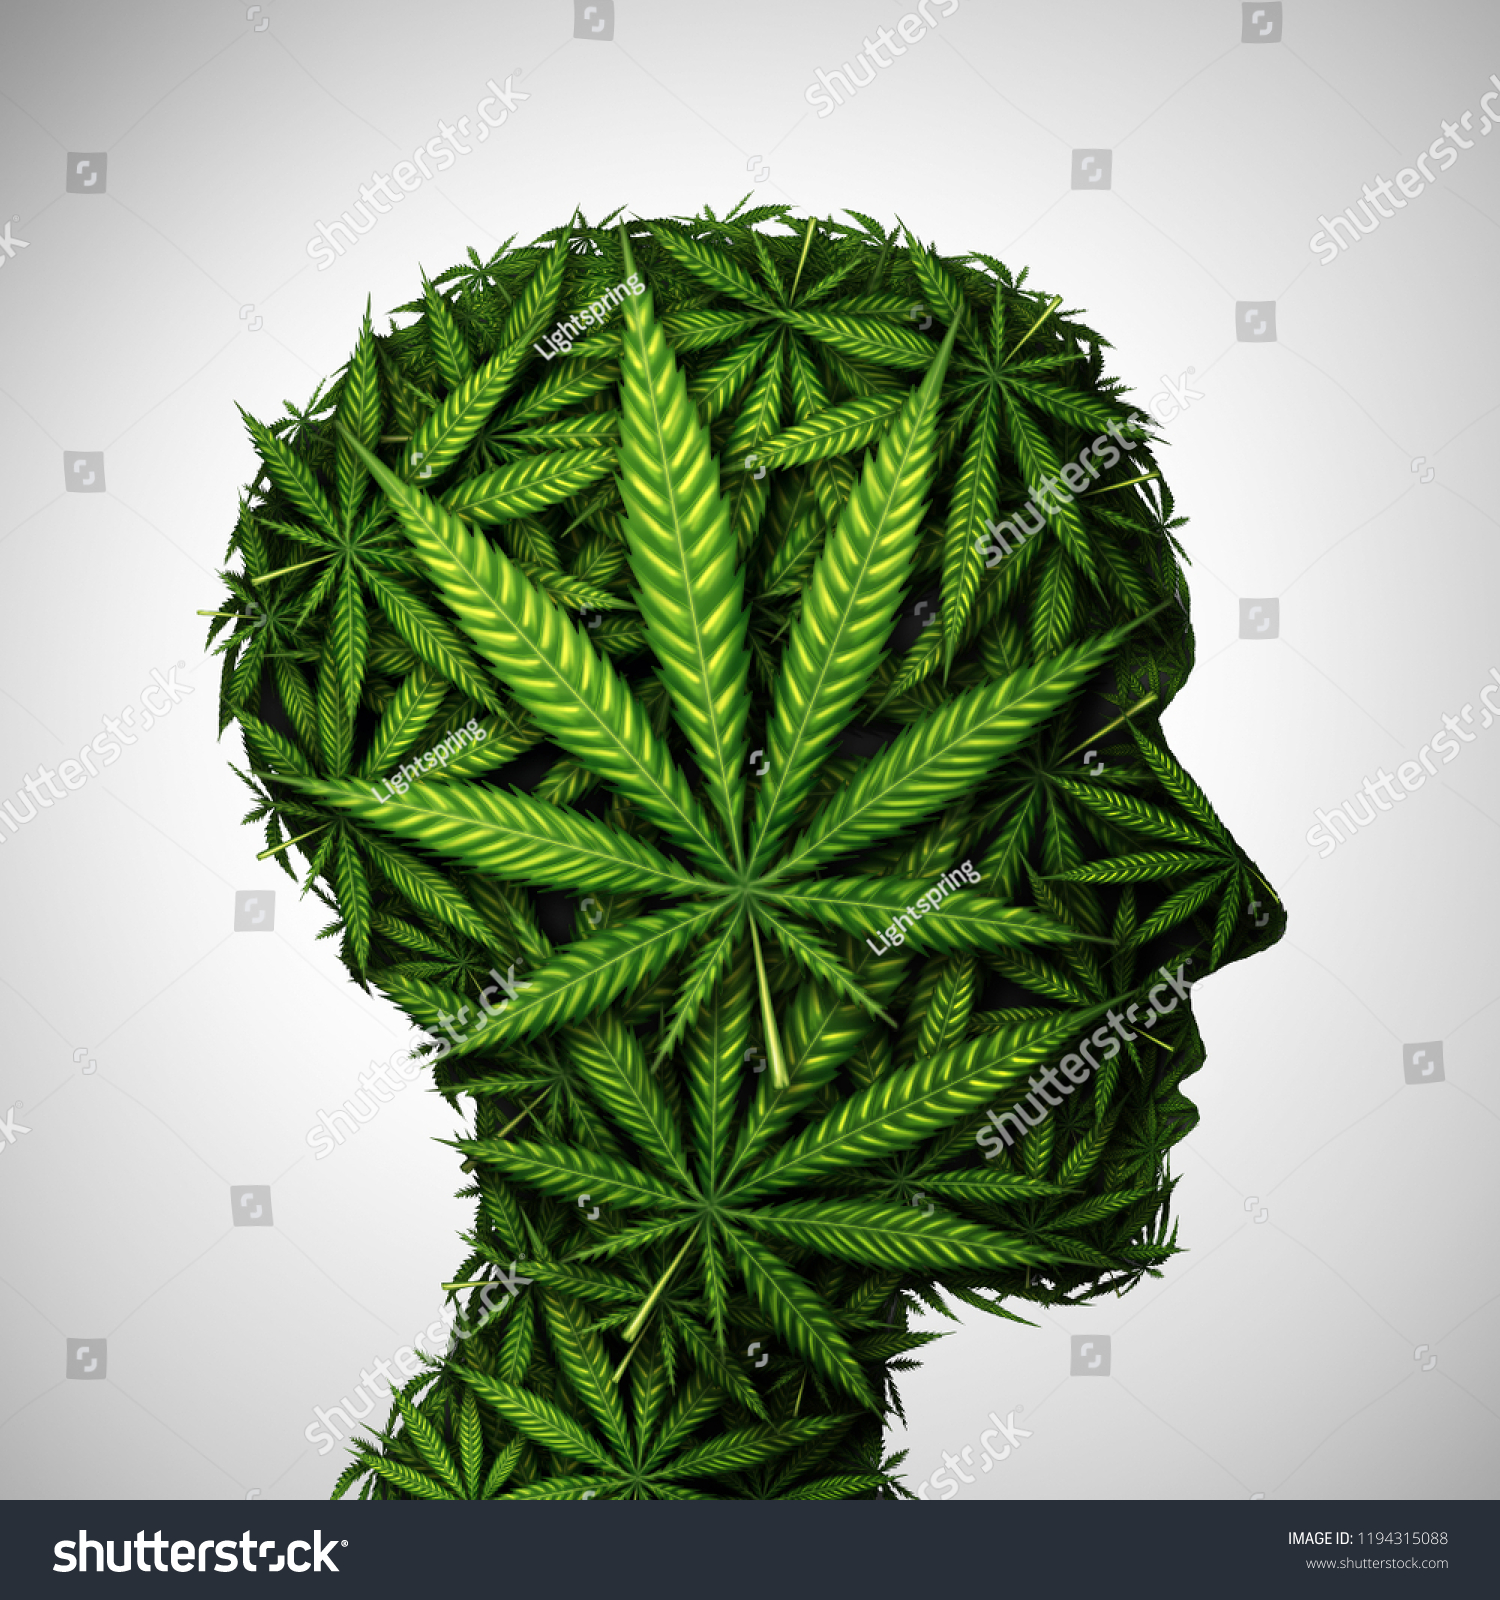 3д картинки марихуана как в браузере тор сменить страну hidra